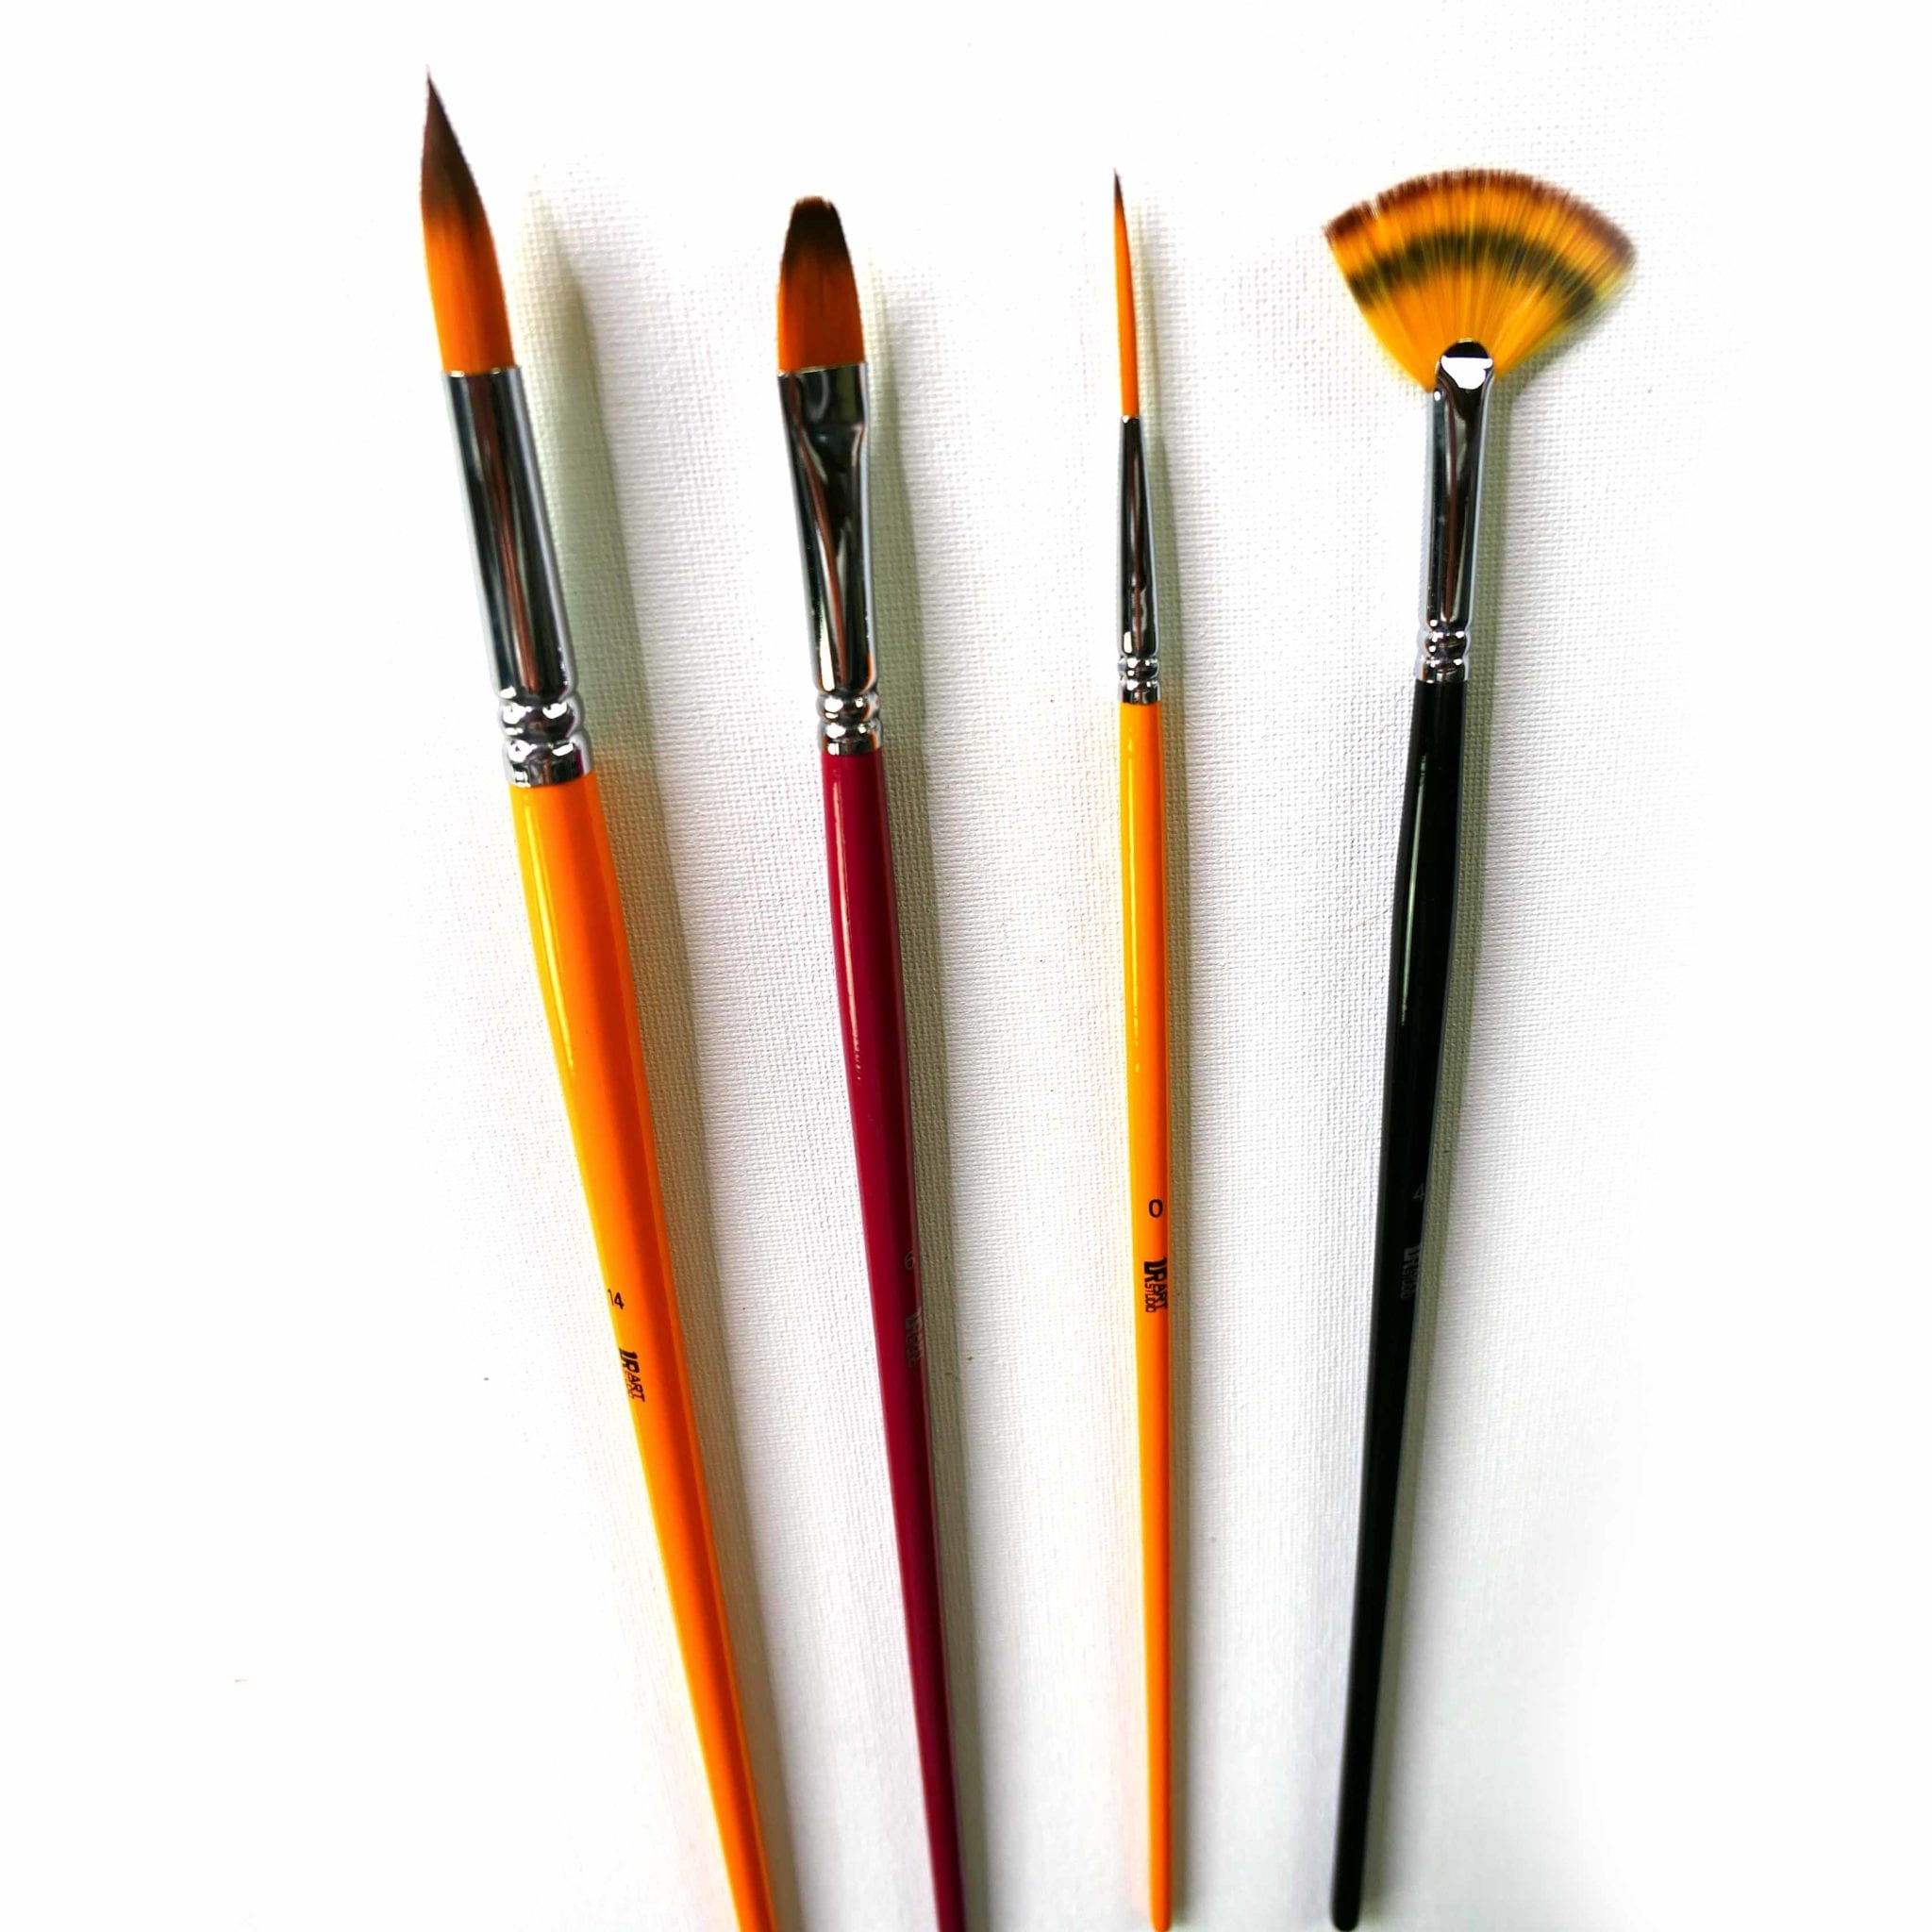 The Paint Brush Cover PBL20 Likwid The Paint Brush Light, Orange